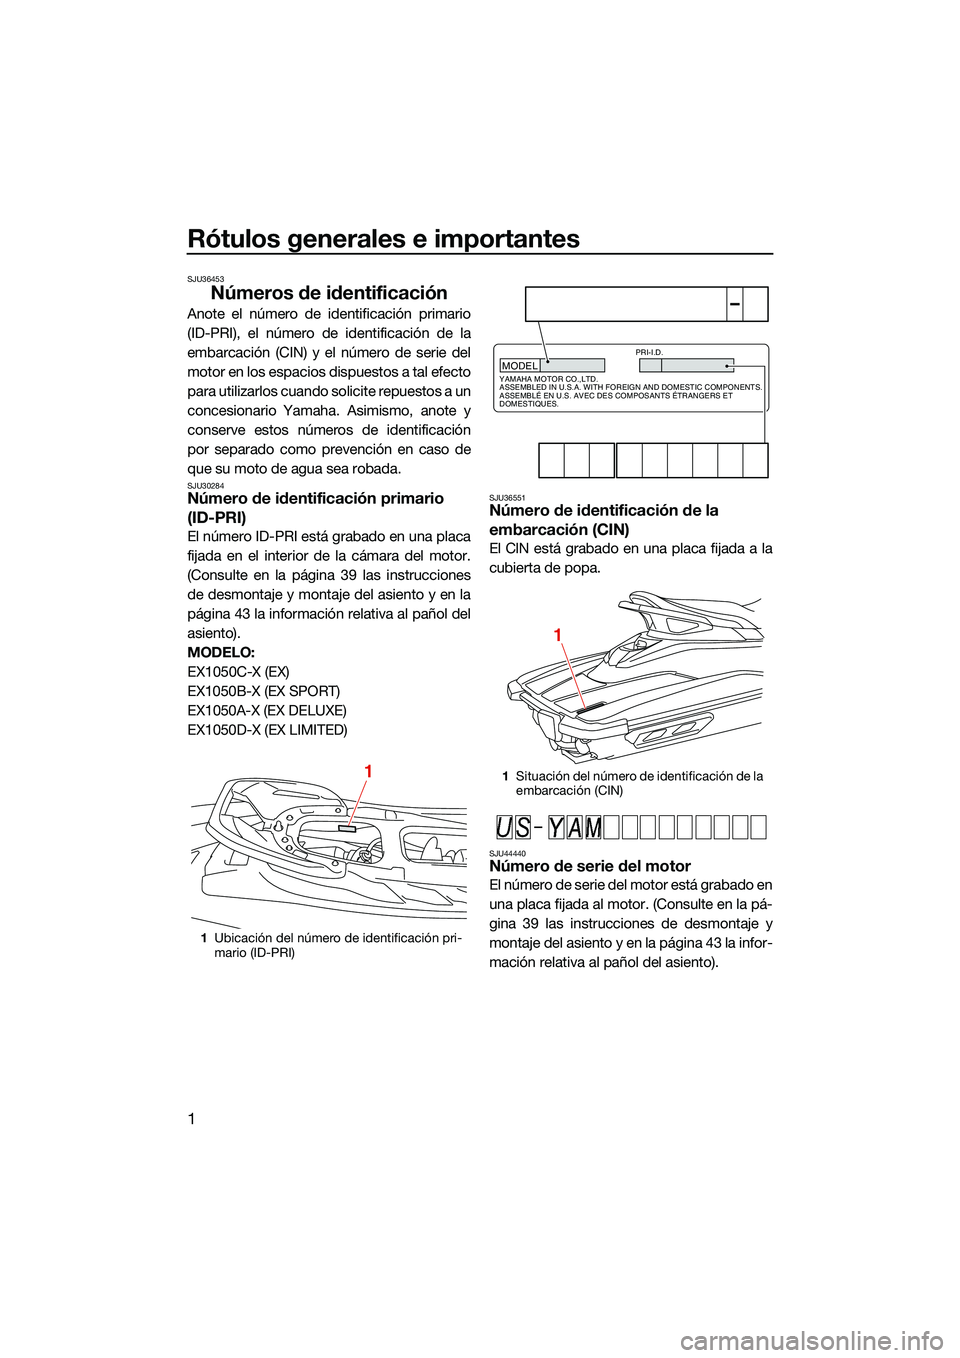 YAMAHA EX 2022  Manuale de Empleo (in Spanish) Rótulos generales e importantes
1
SJU36453
Números de identificación
Anote el número de identificación primario
(ID-PRI), el número de identificación de la
embarcación (CIN) y el número de se